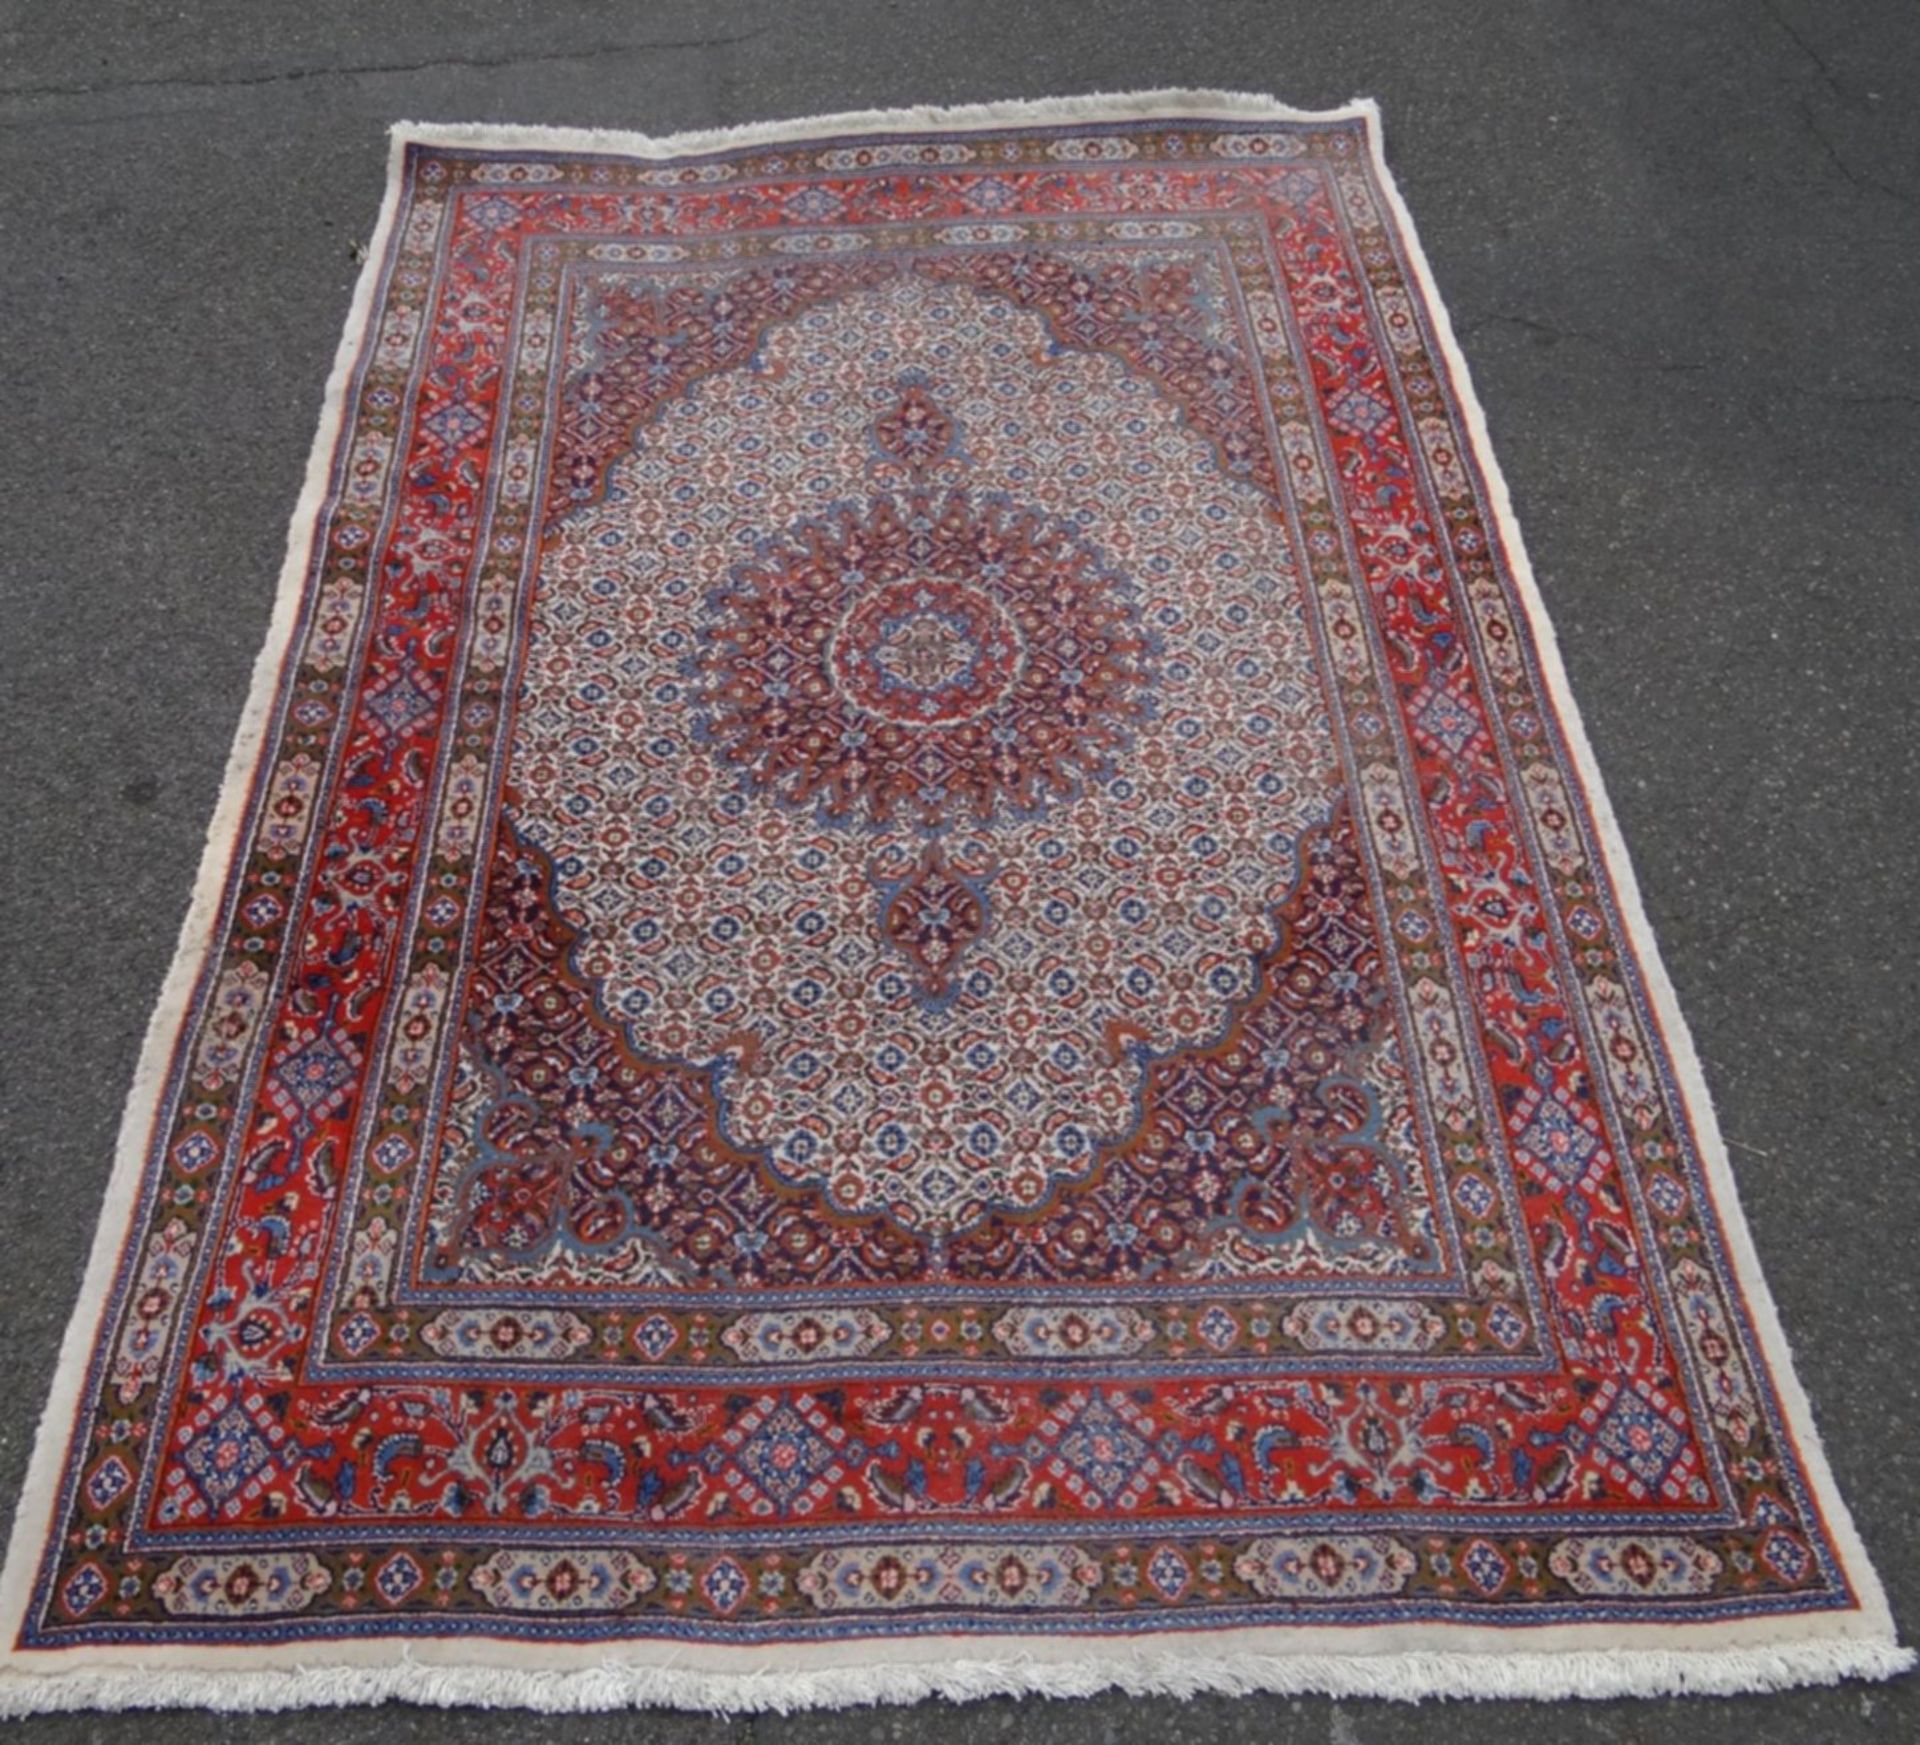 Orient-Teppich, 233x154 cm,Gebrauchsspuren, minim. Mottenbefall am Rand